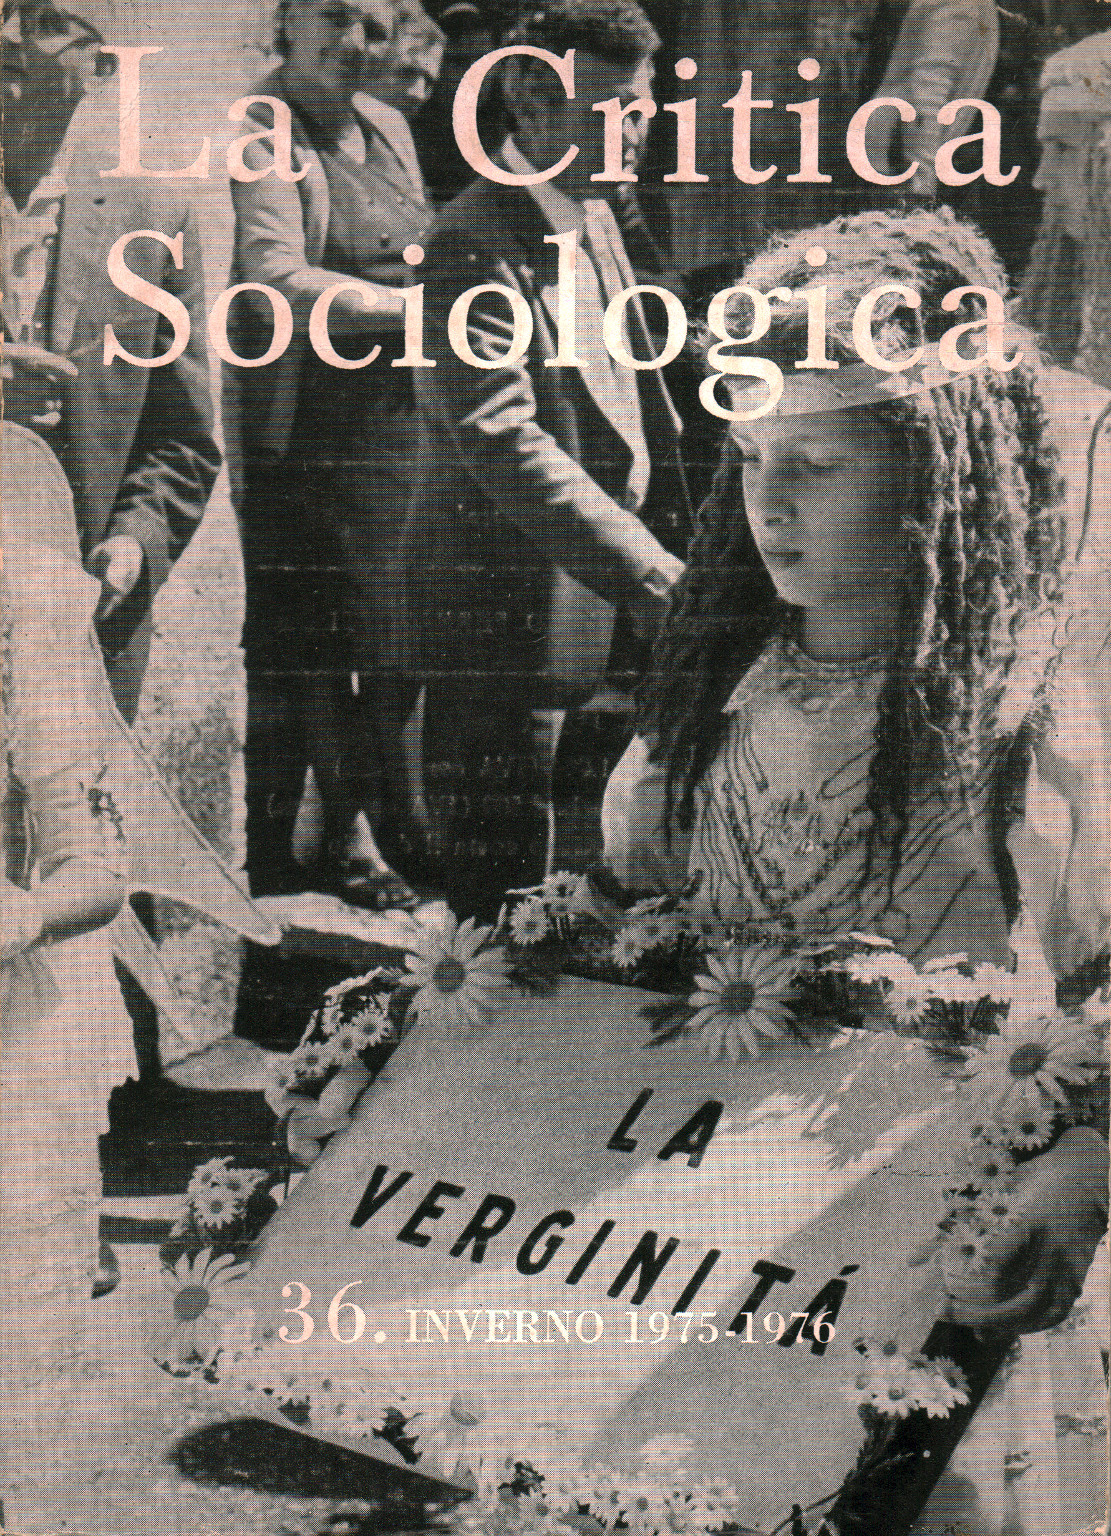 Die Kritik der Soziologischen nr. 36. Winter 1975-1976, s.zu.